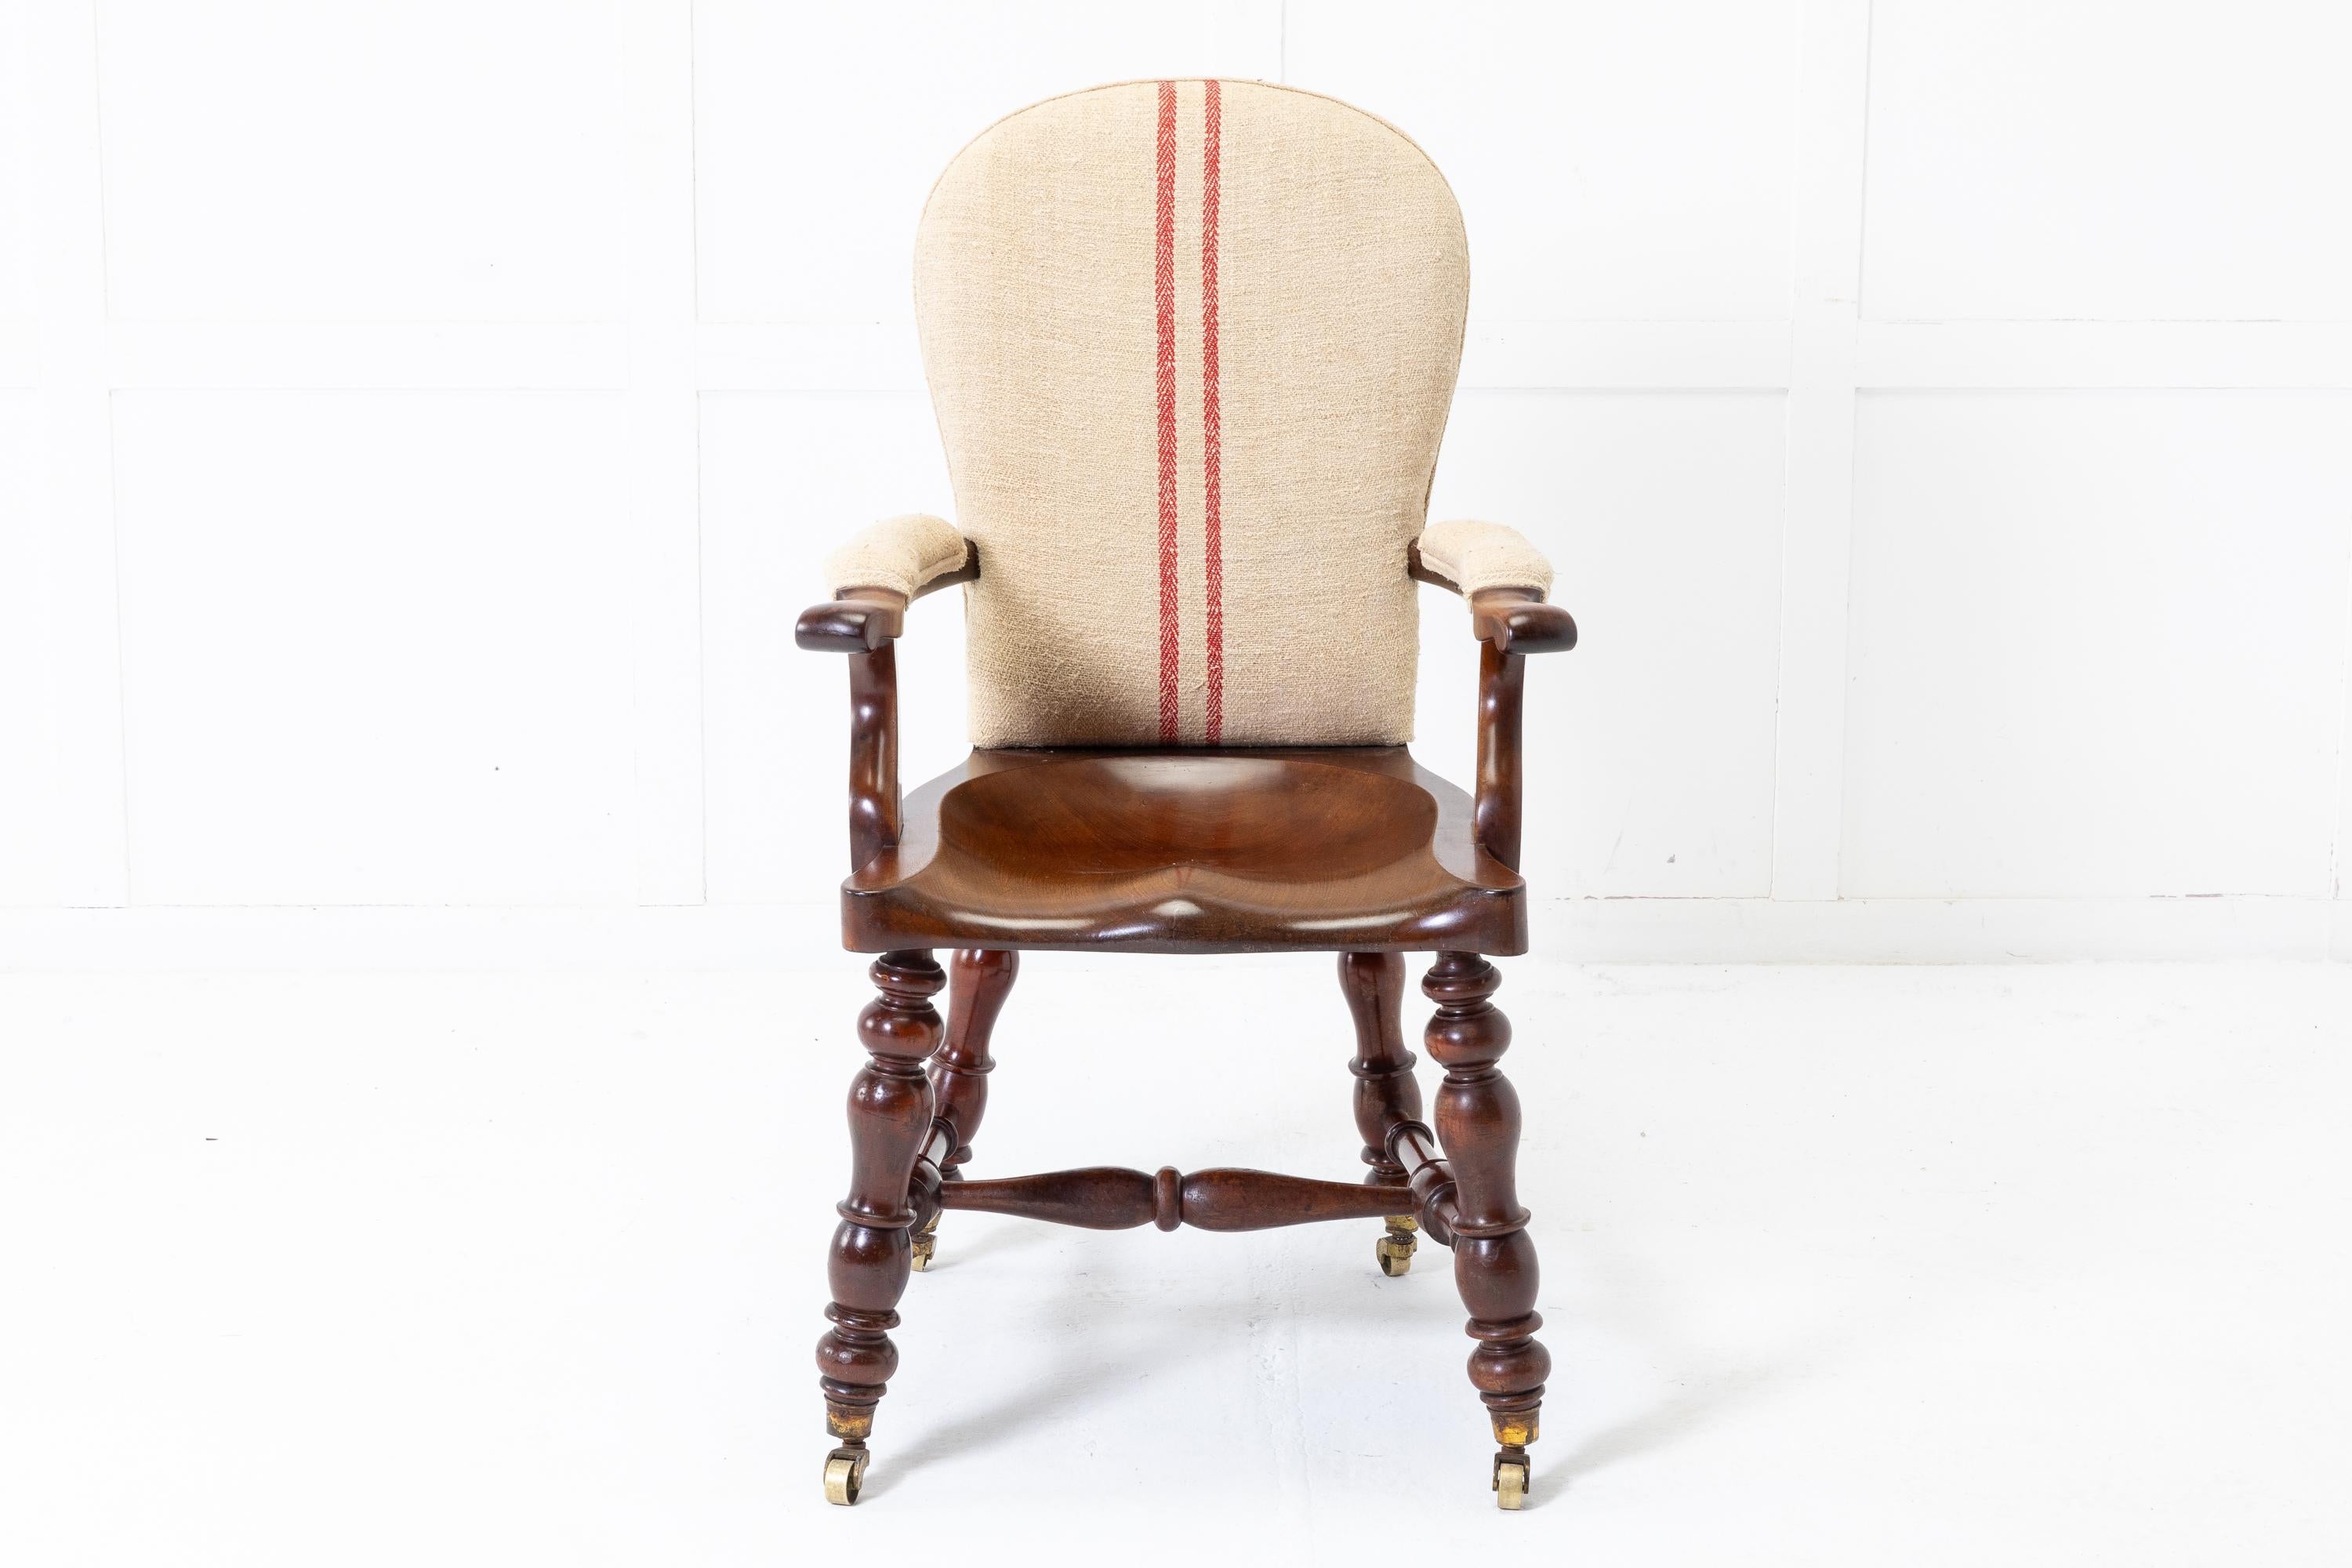 Hochwertiger, schwerer englischer Mahagoni-Sessel des 19. Jahrhunderts mit offenen Armlehnen und gewölbtem Sattelsitz. Mit schön gedrechselten Beinen und gedrechseltem Querbalken. Endet in Messingrollen. Gepolstert mit altem Hanfstoff.

Ein sehr